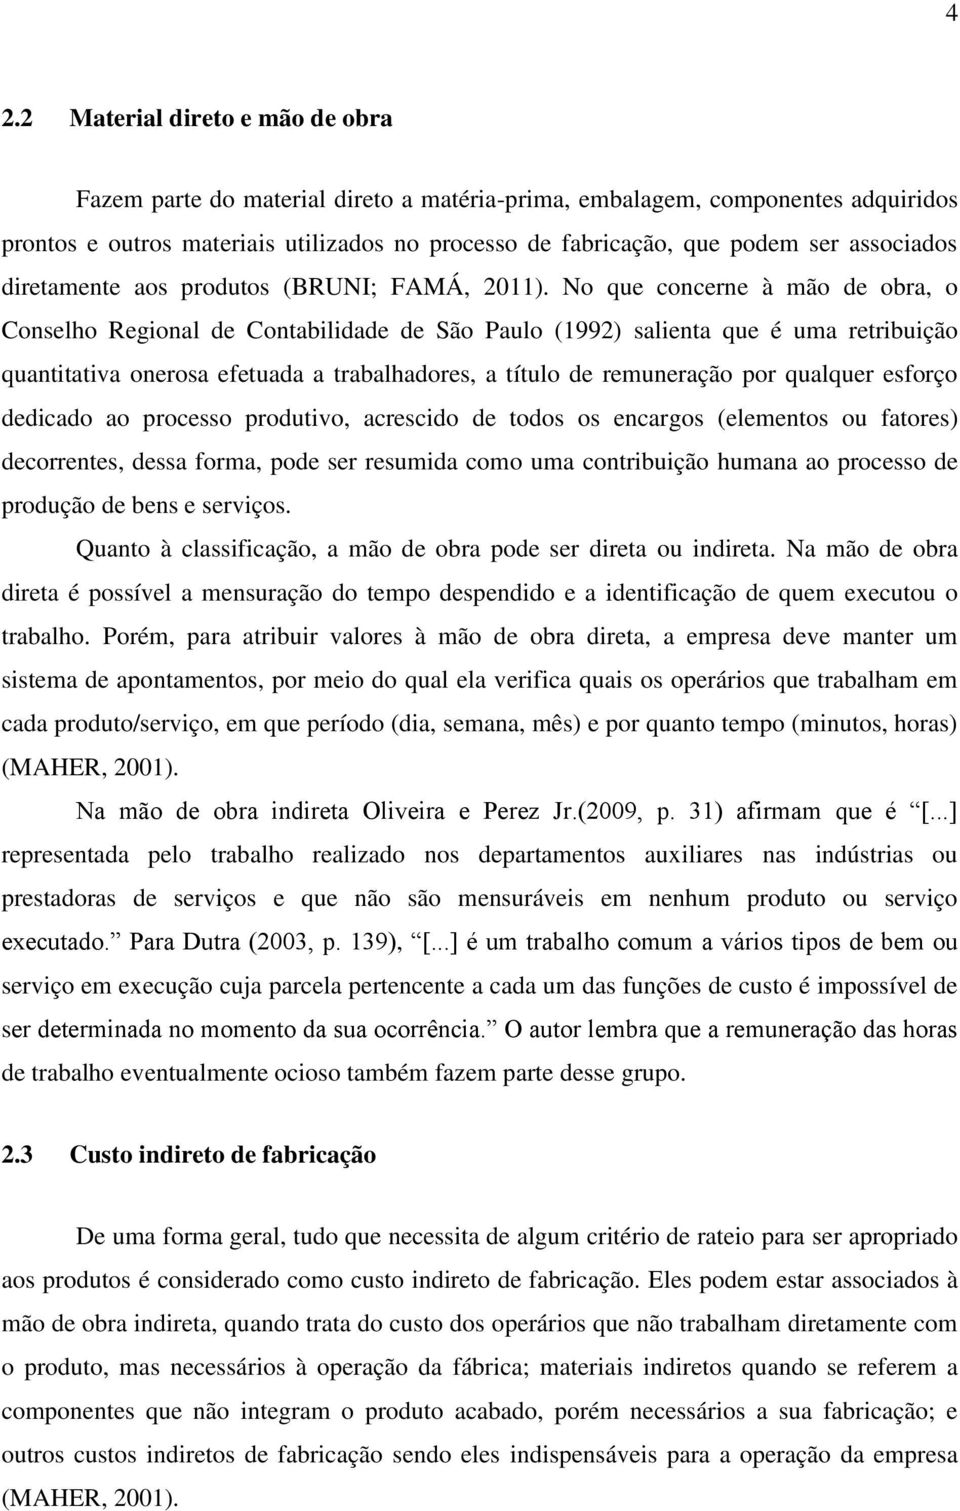 No que concerne à mão de obra, o Conselho Regional de Contabilidade de São Paulo (1992) salienta que é uma retribuição quantitativa onerosa efetuada a trabalhadores, a título de remuneração por